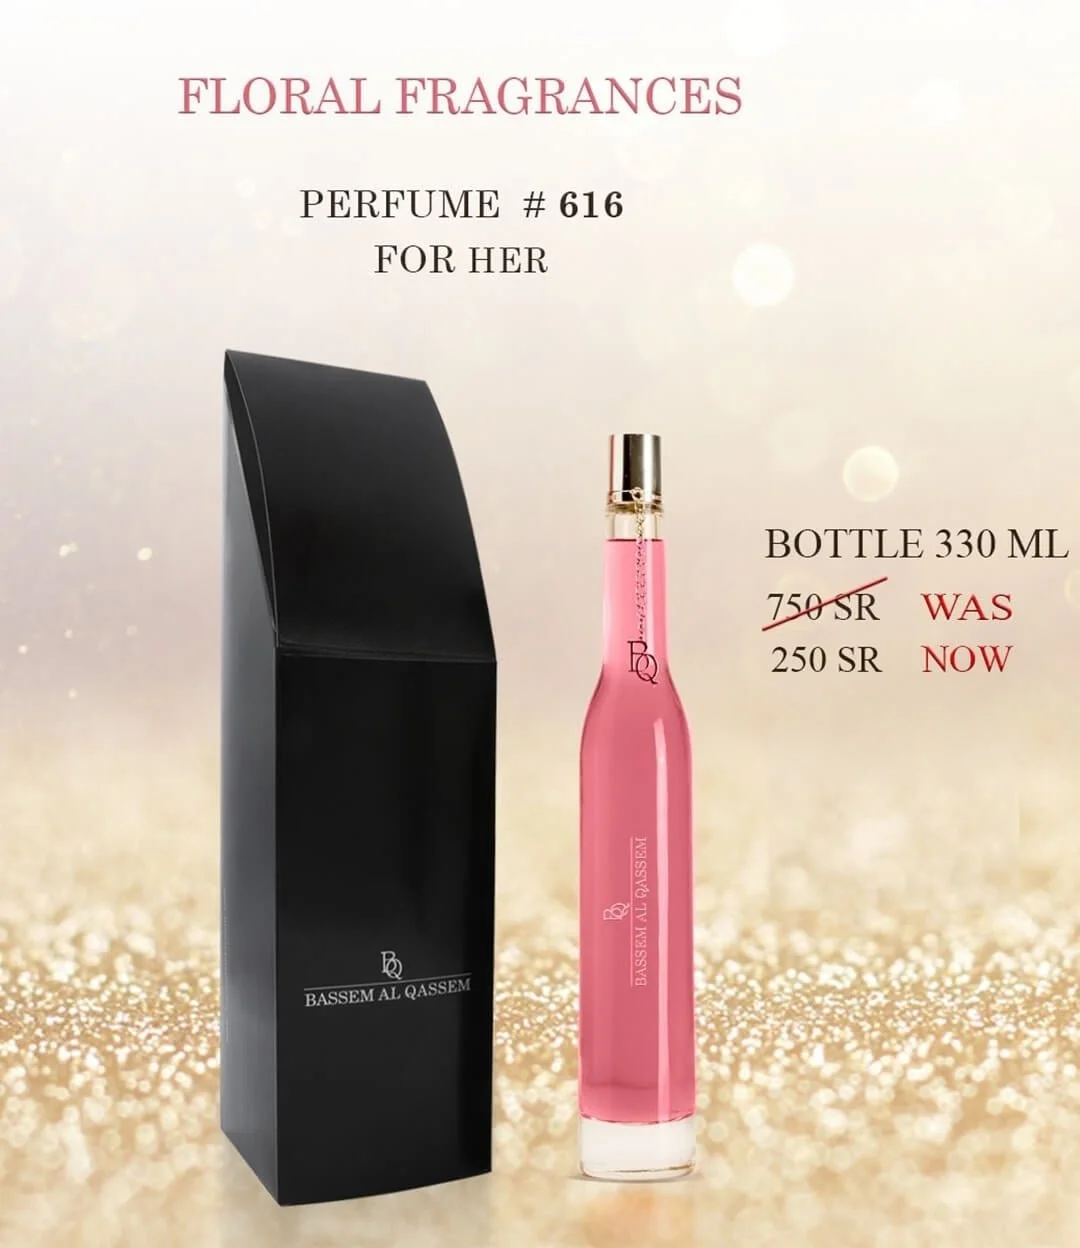 Perfume #616 Floral Fragrance for Her by Bassem Al Qassem 